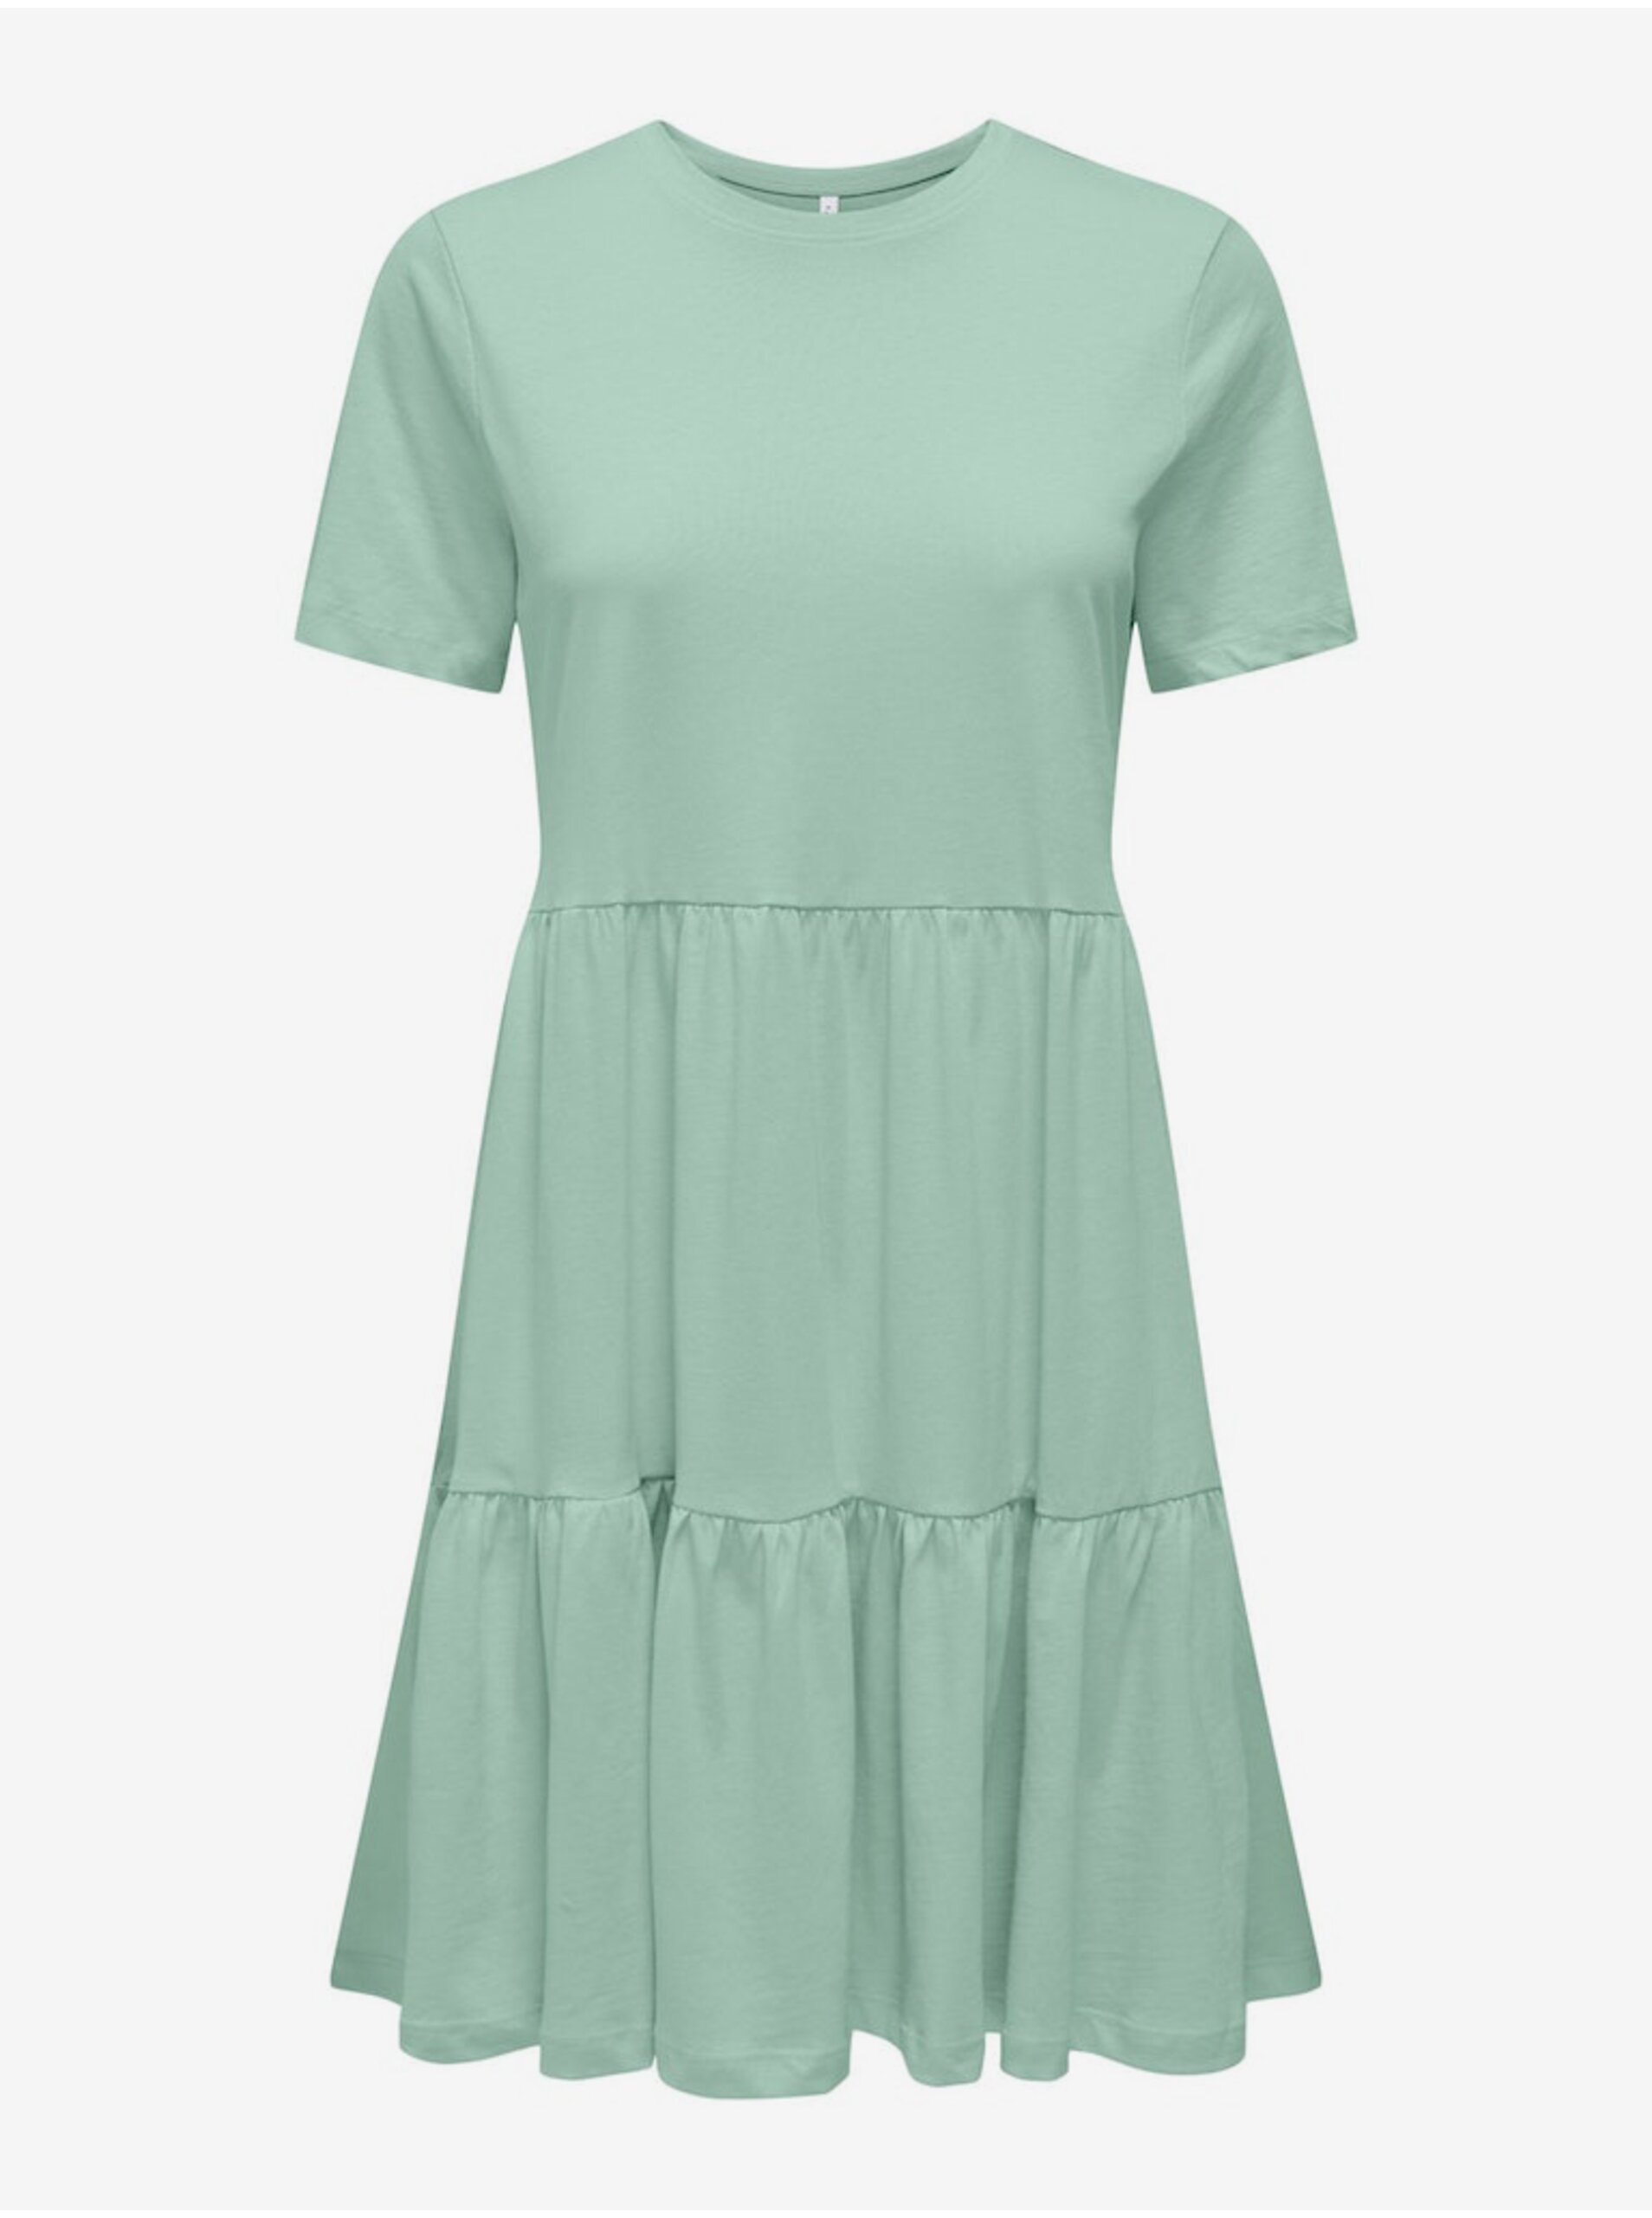 Lacno Svetlo zelené dámske basic šaty ONLY May